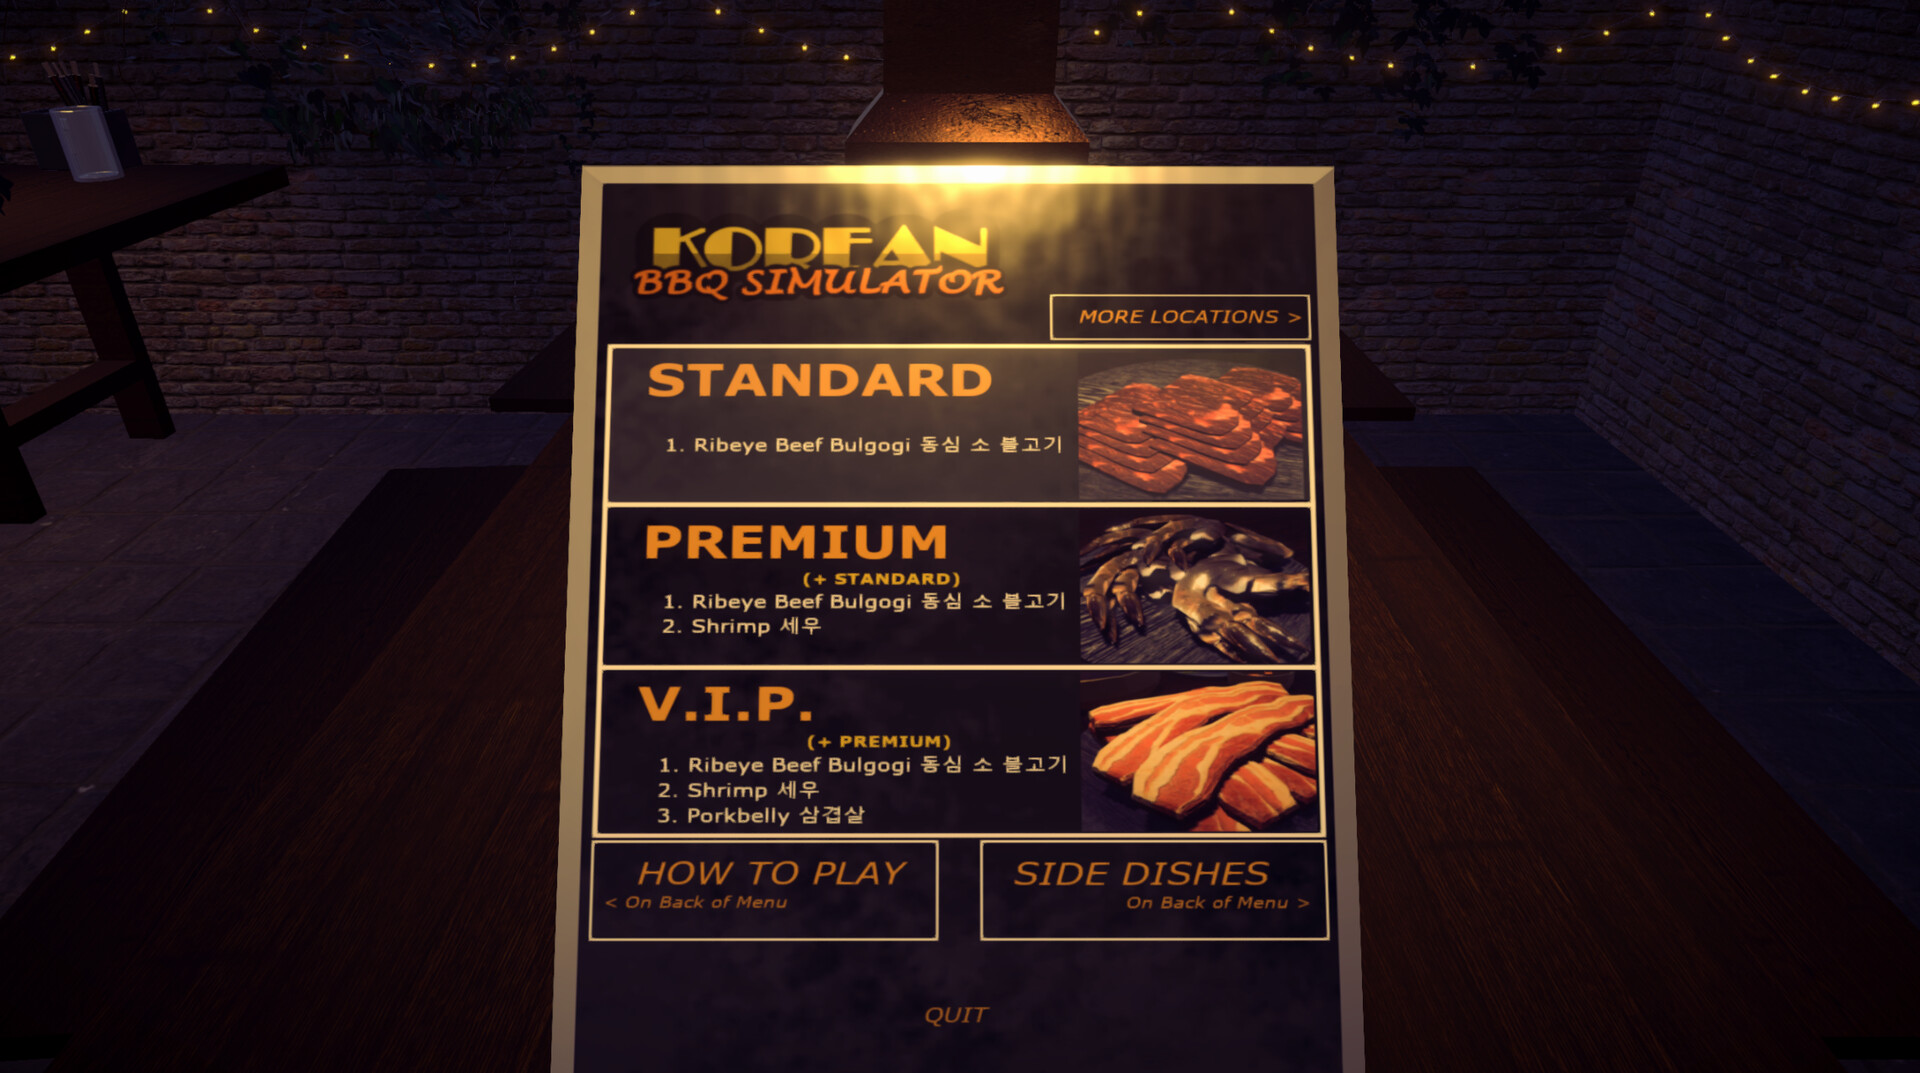 Korean BBQ Simulator Steam CD Key $4.42